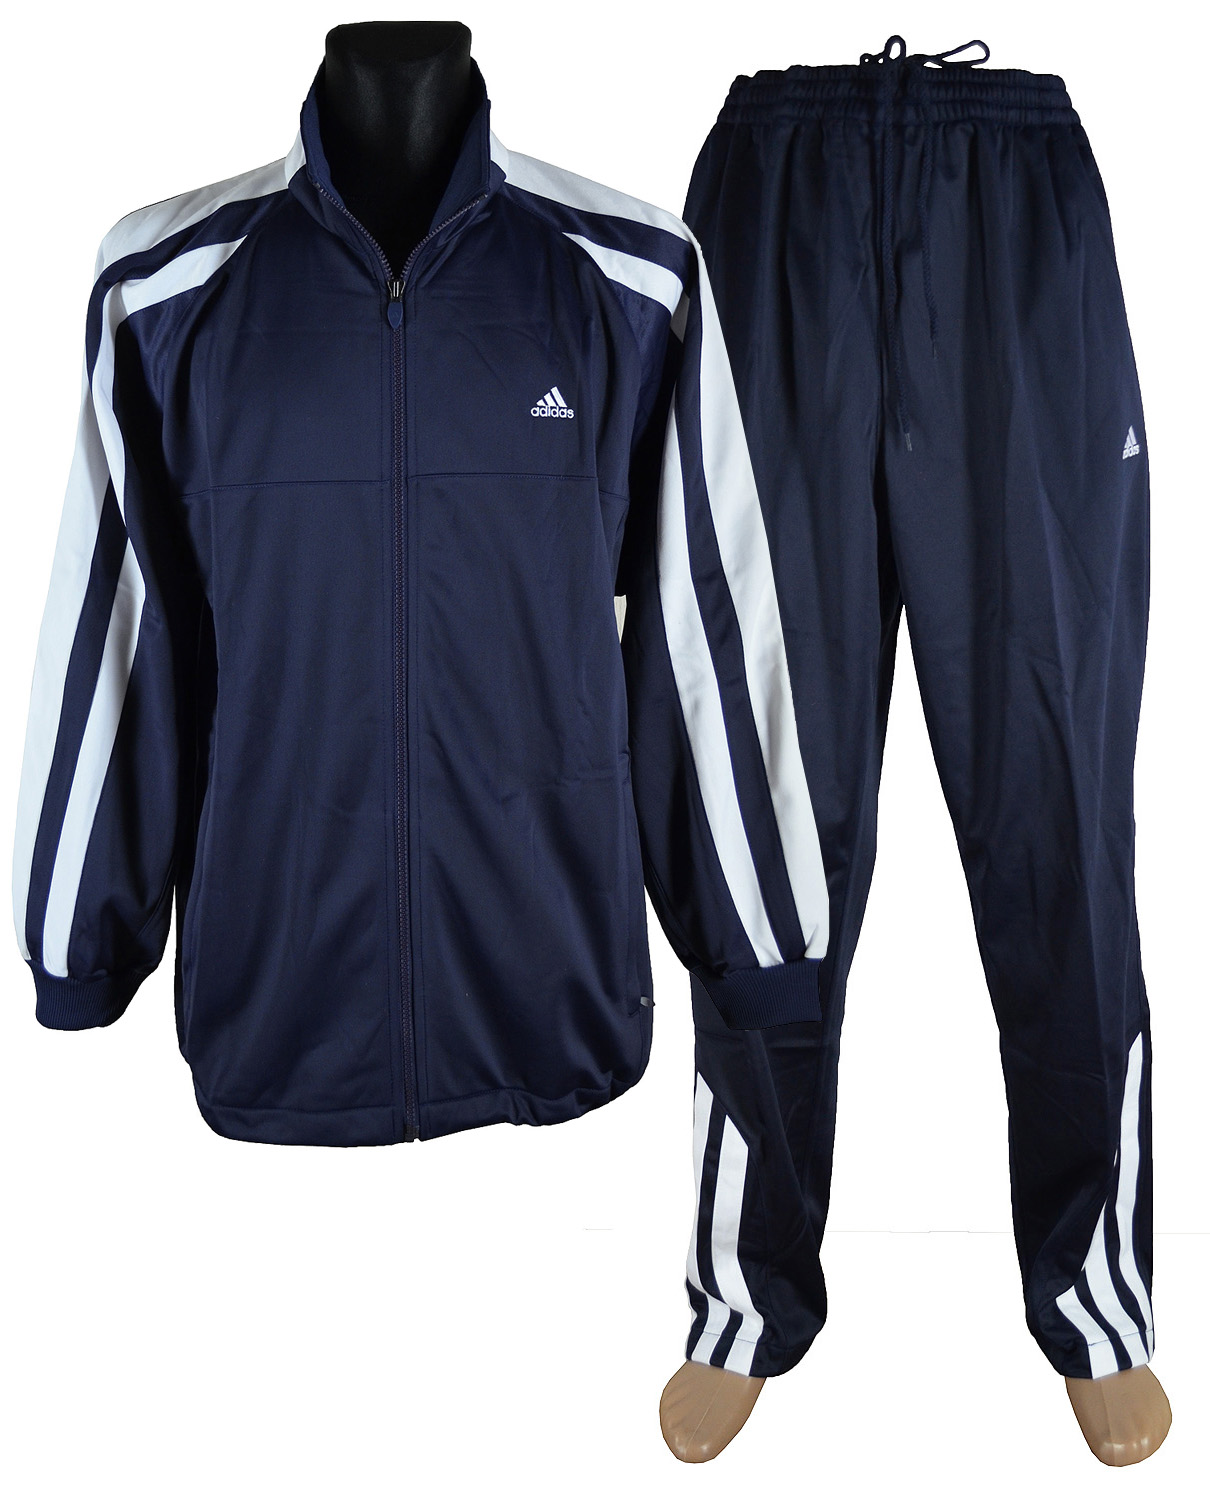 Спортивный костюм адидас на озон. Спортивные костюмы мужские адидас 2021. Спортивный костюм adidas (a424). Костюм adidas мужской f81929. Спортивный костюм adidas (a433).